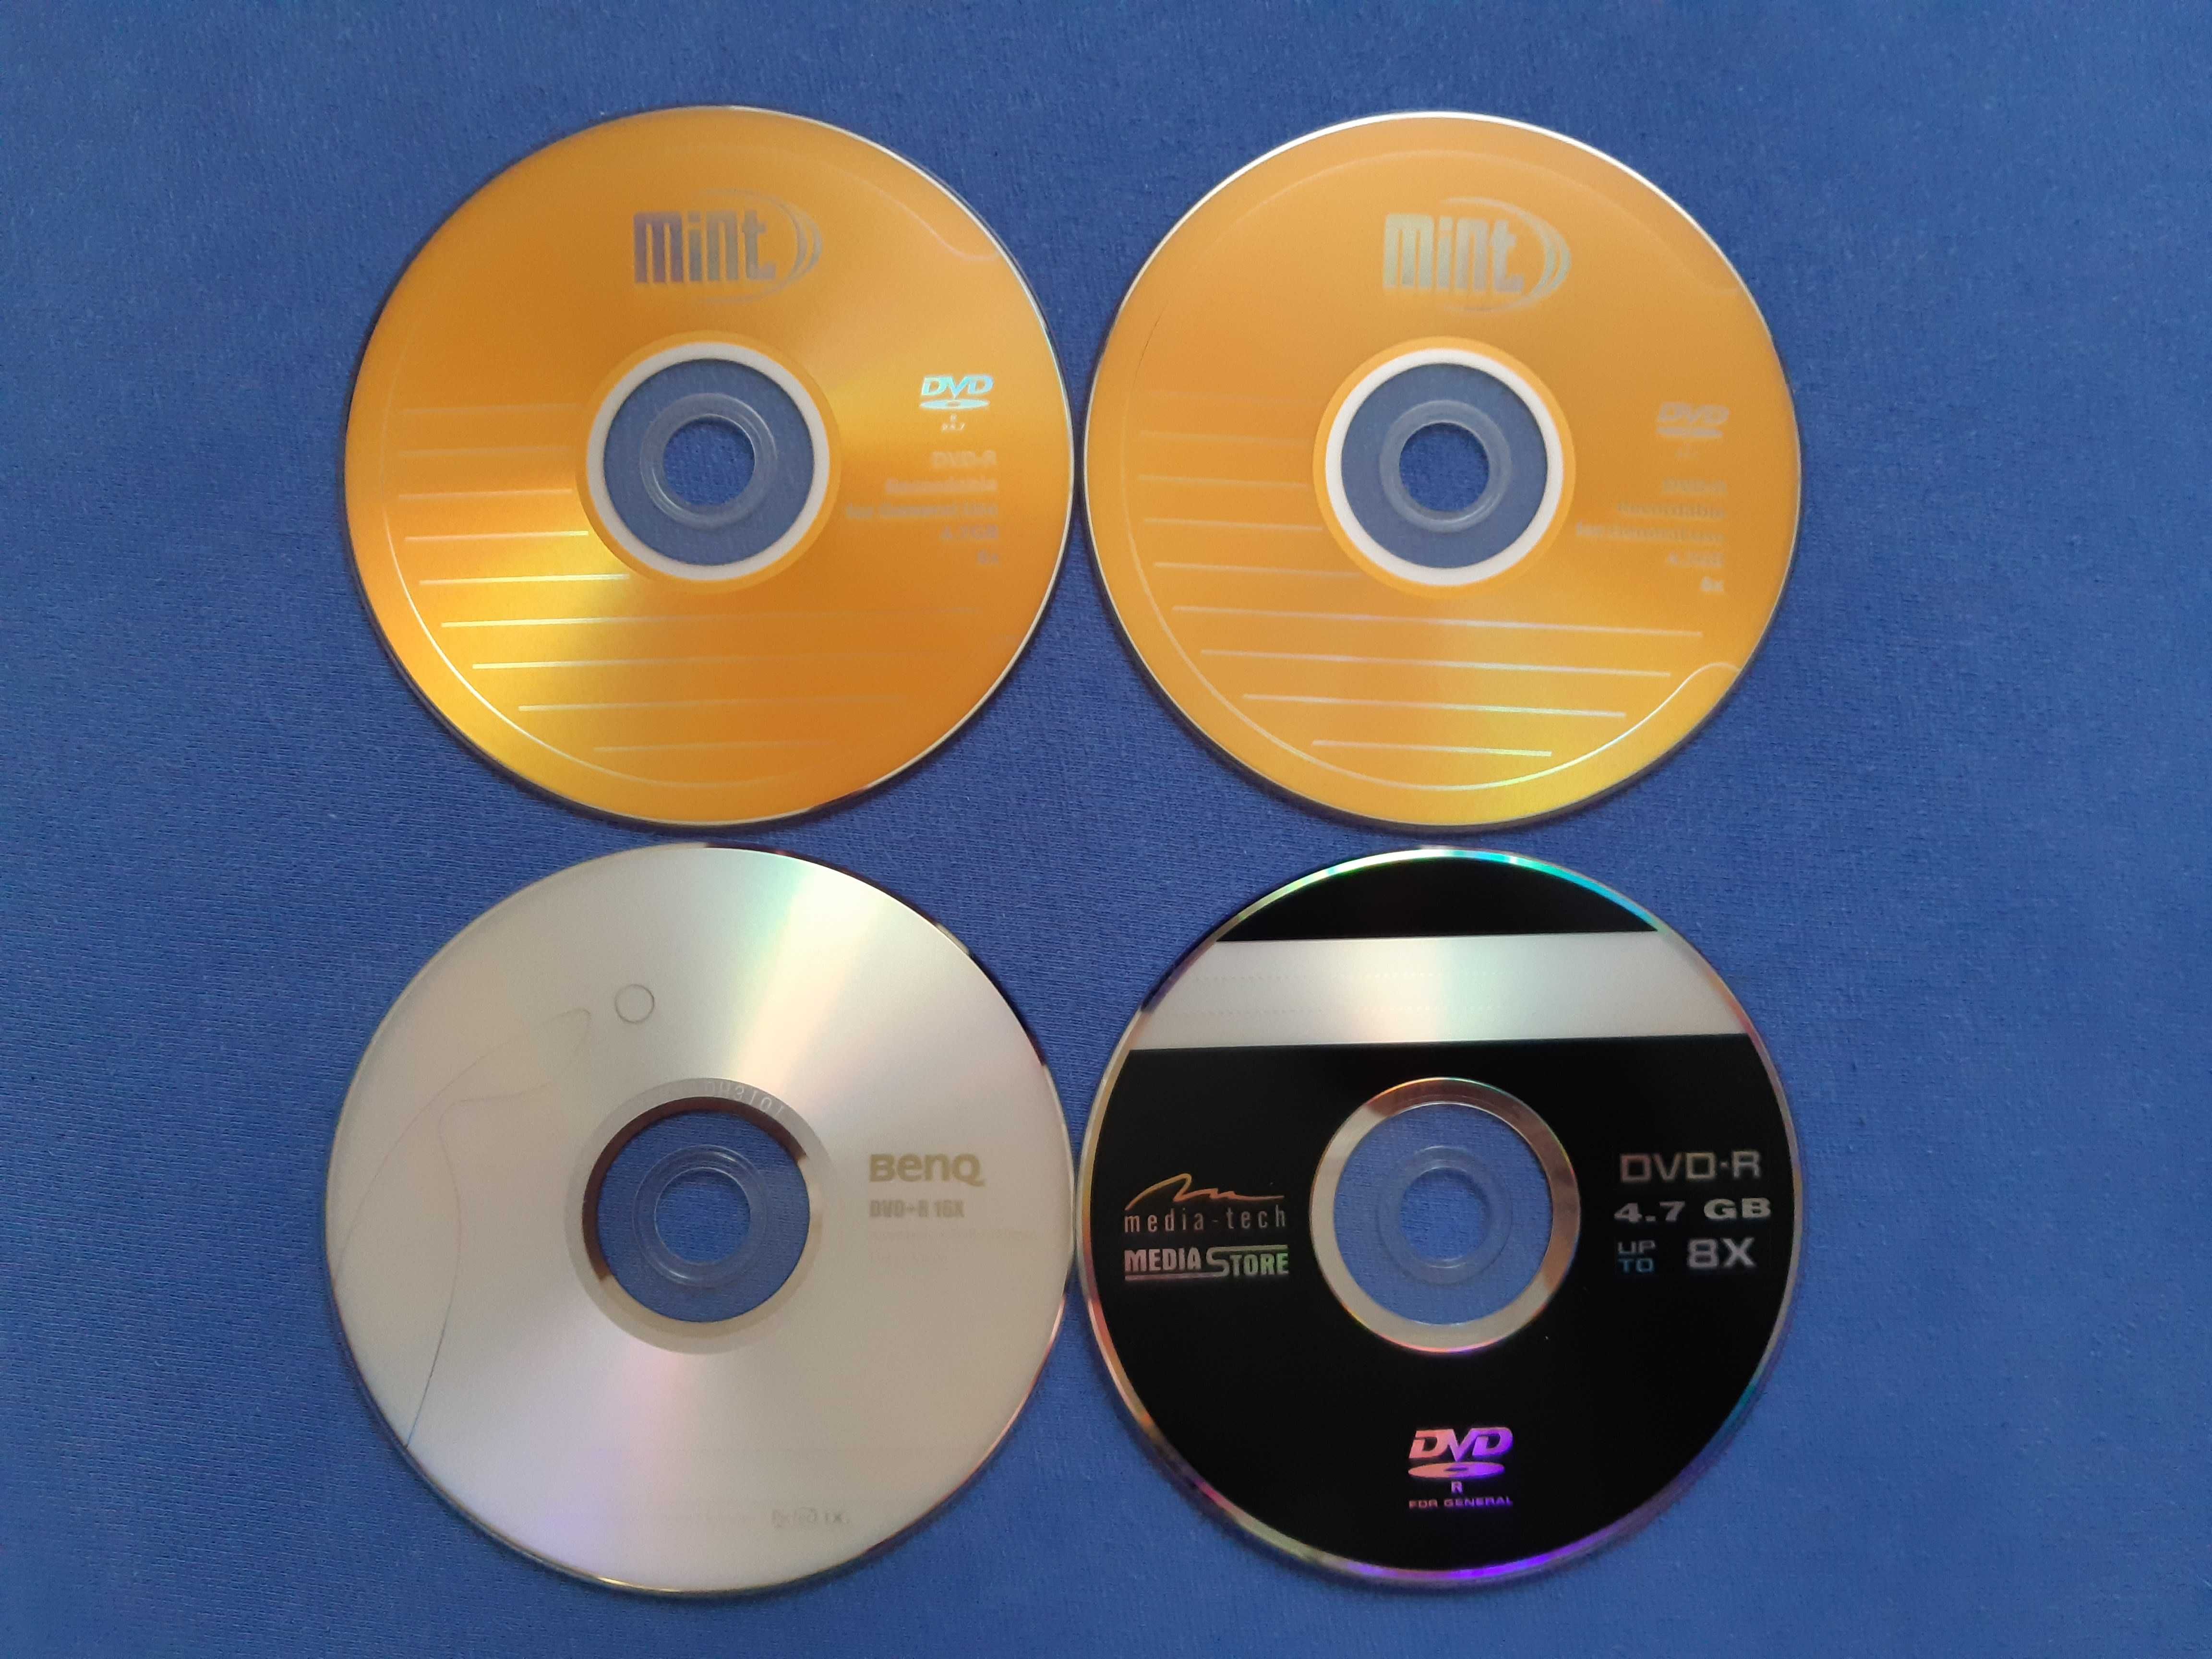 Płyty DVD-R i DVD+R.